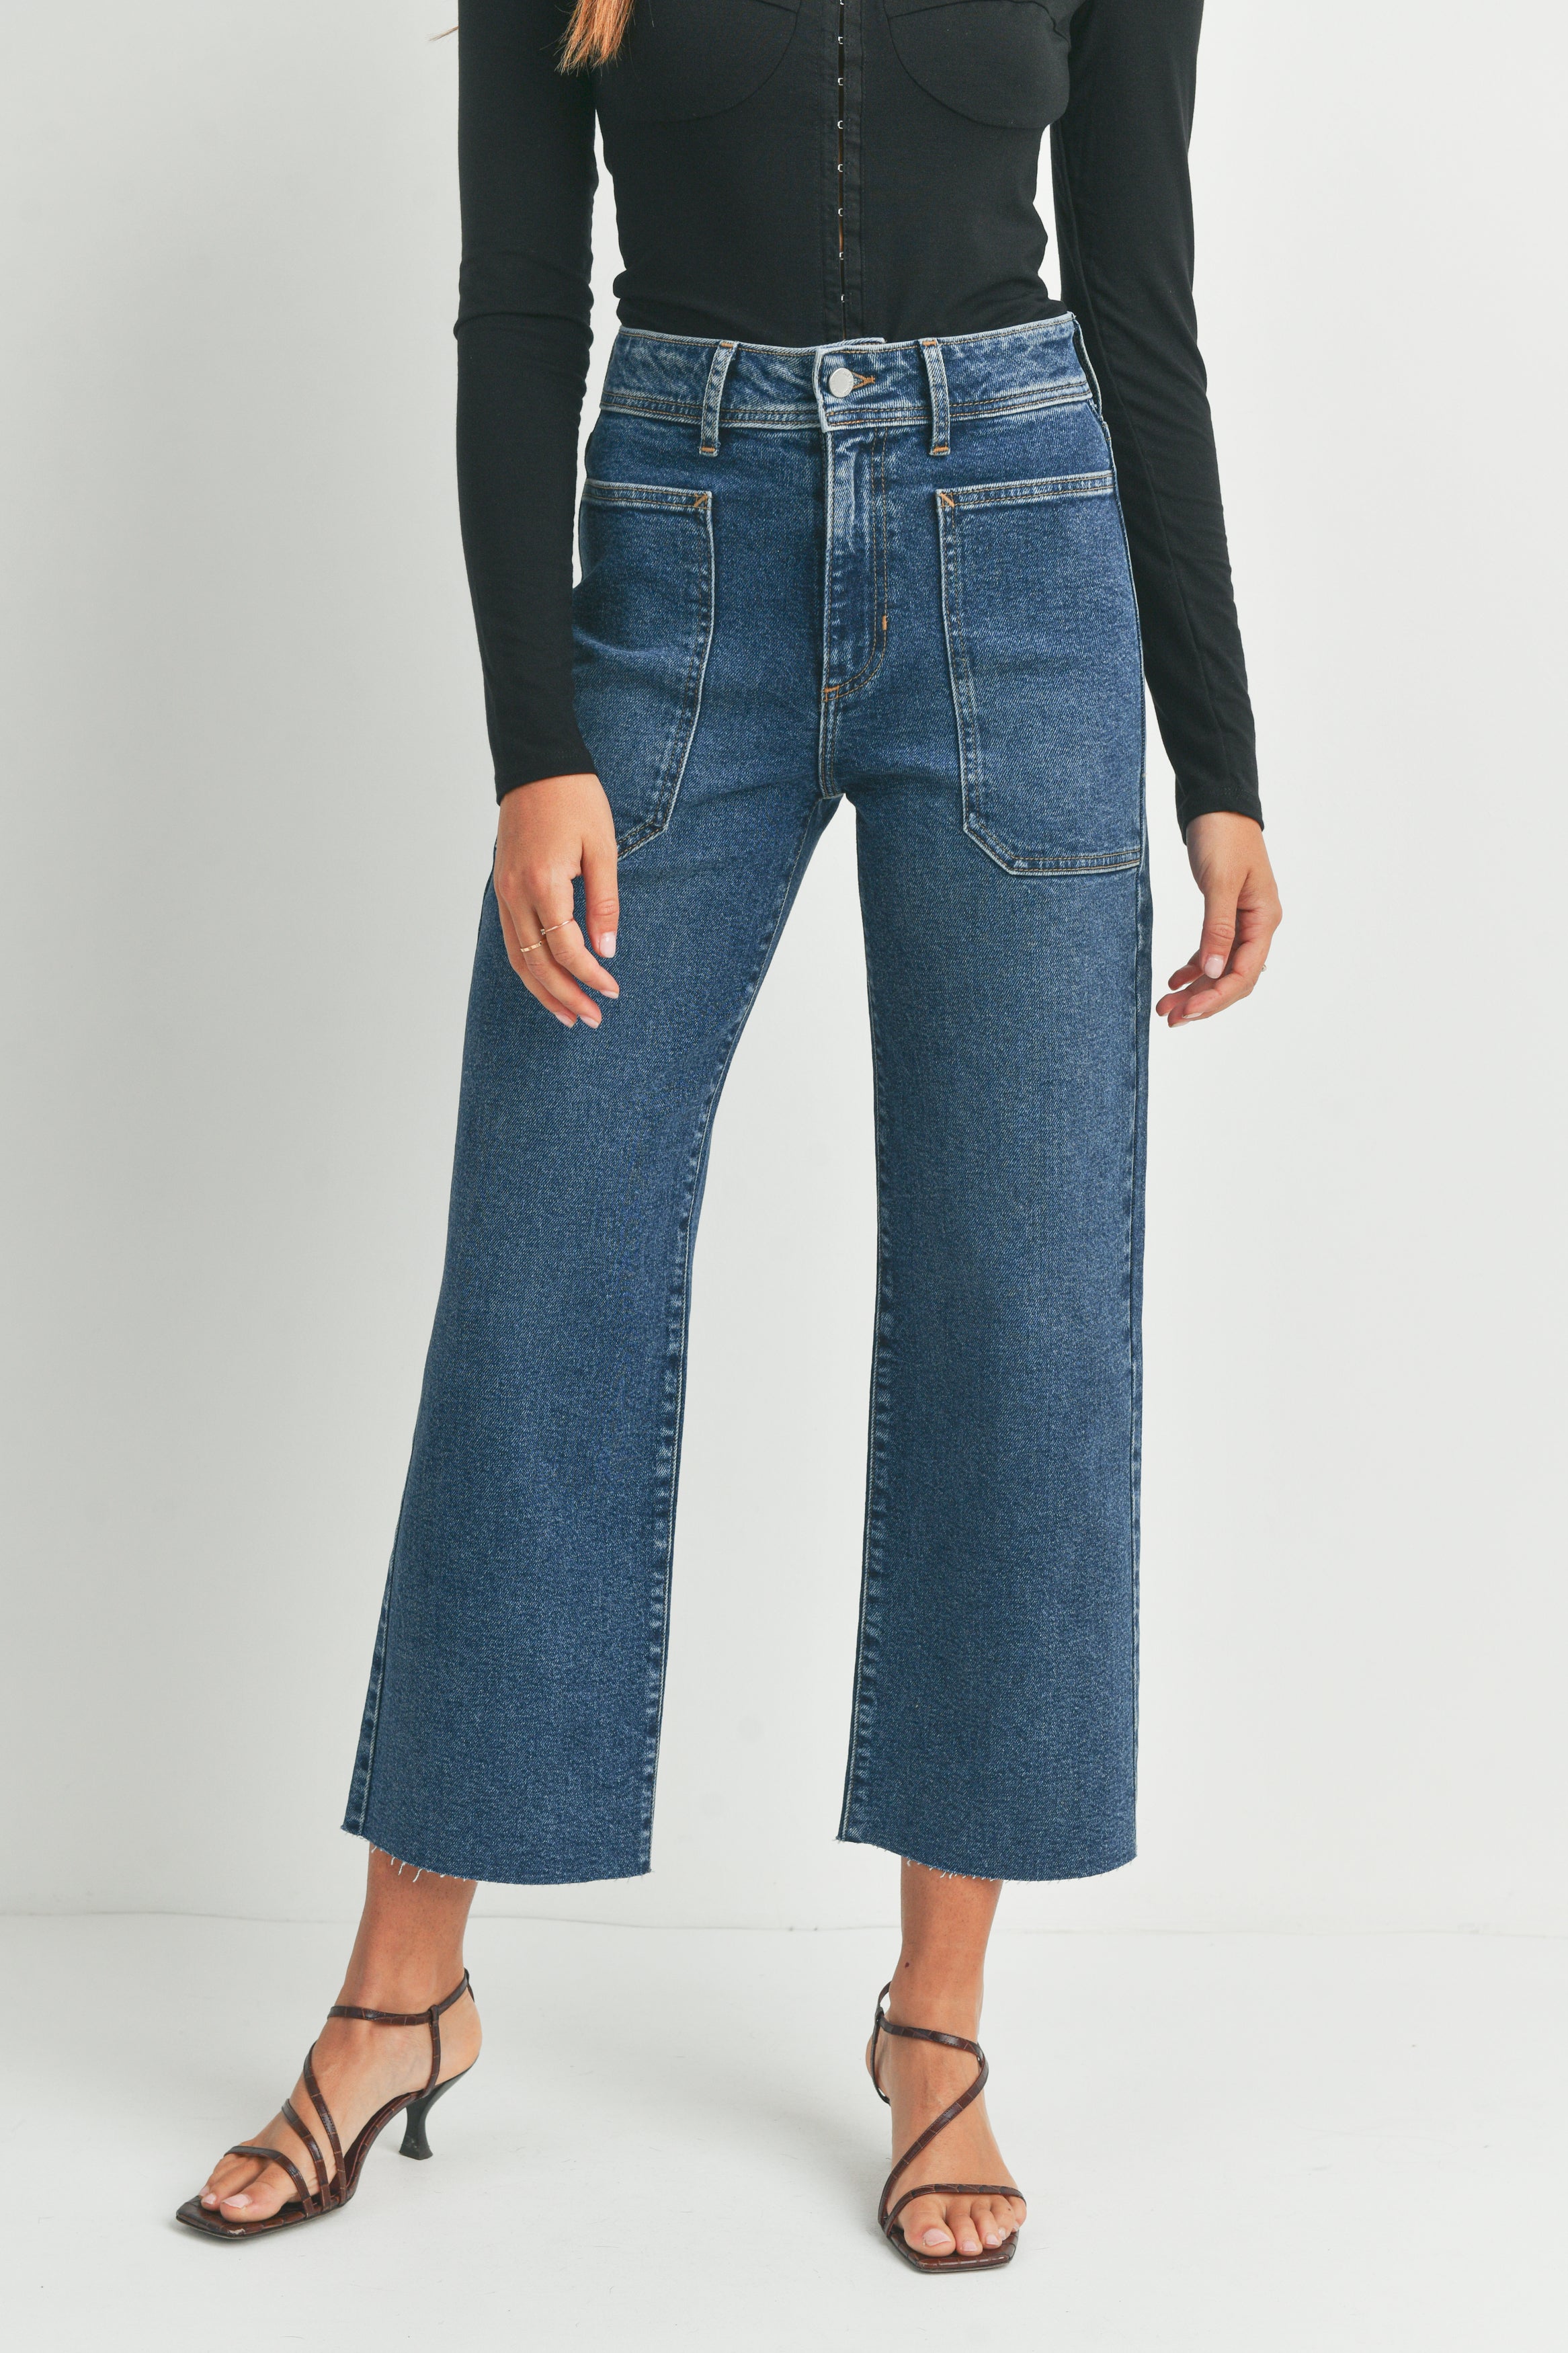 just black jeans | Nordstrom